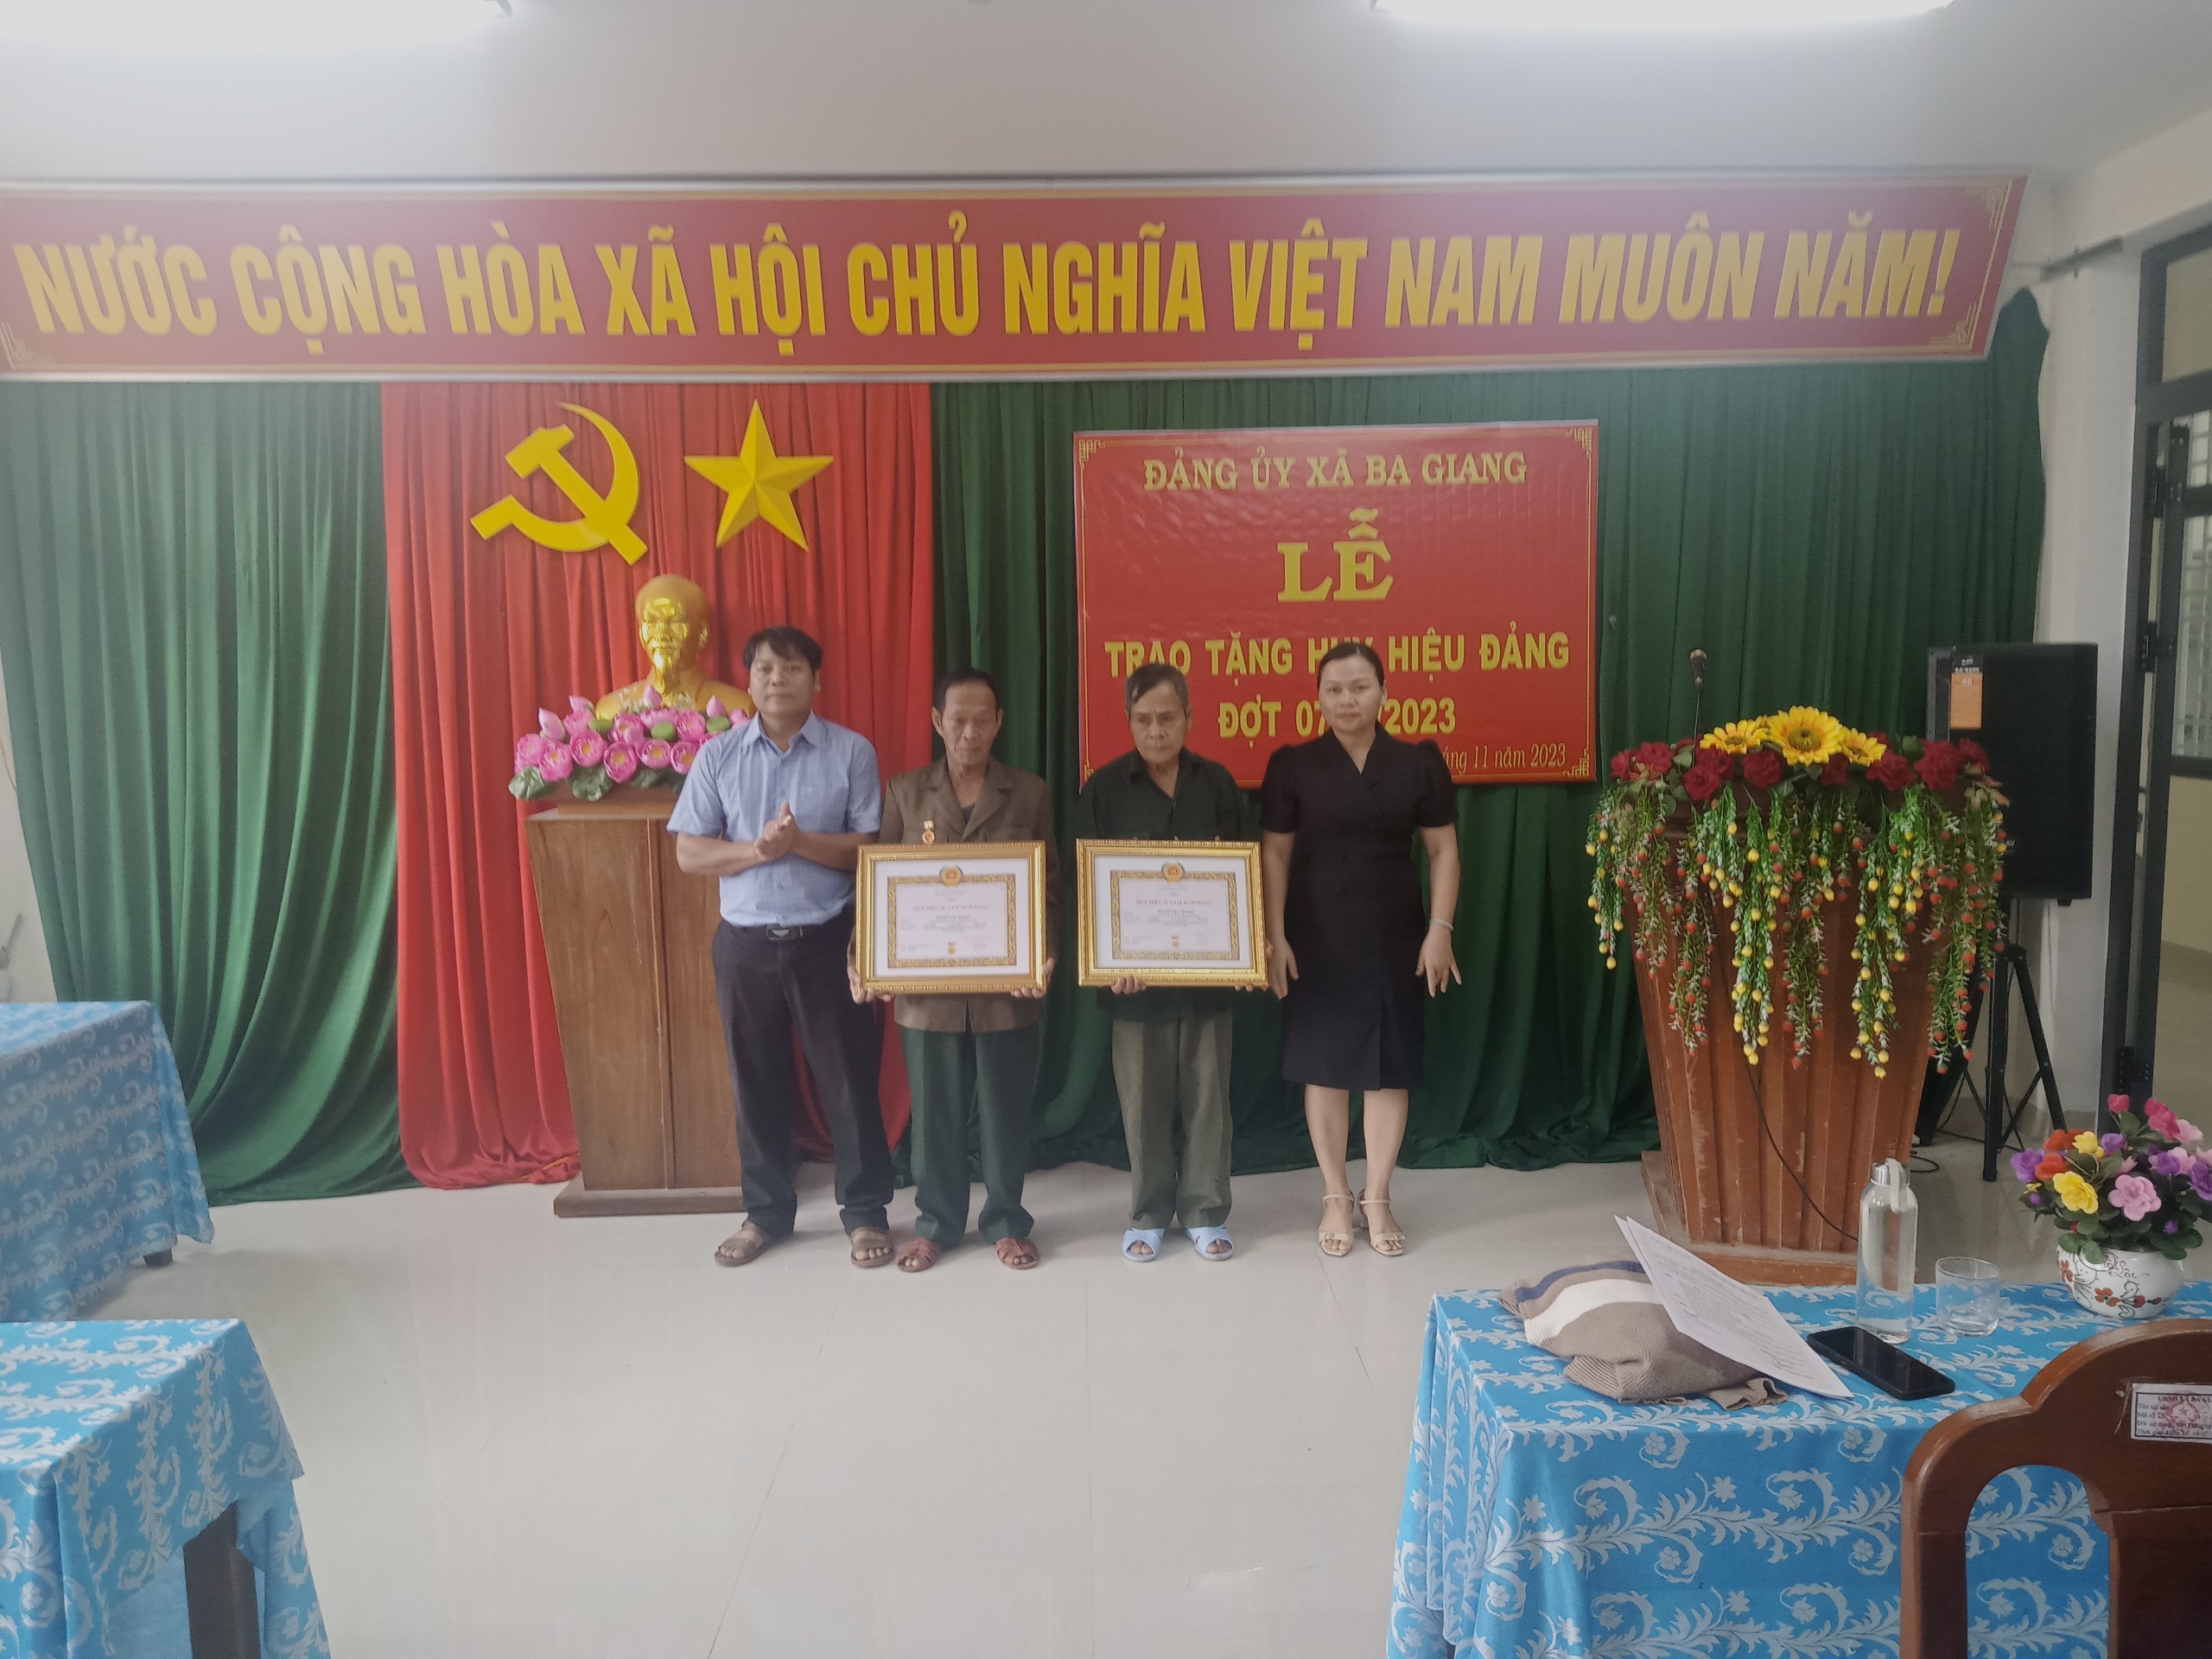 Đảng bộ xã Ba Giang tổ chức Lễ trao tặng huy hiệu 40 năm tuổi Đảng.